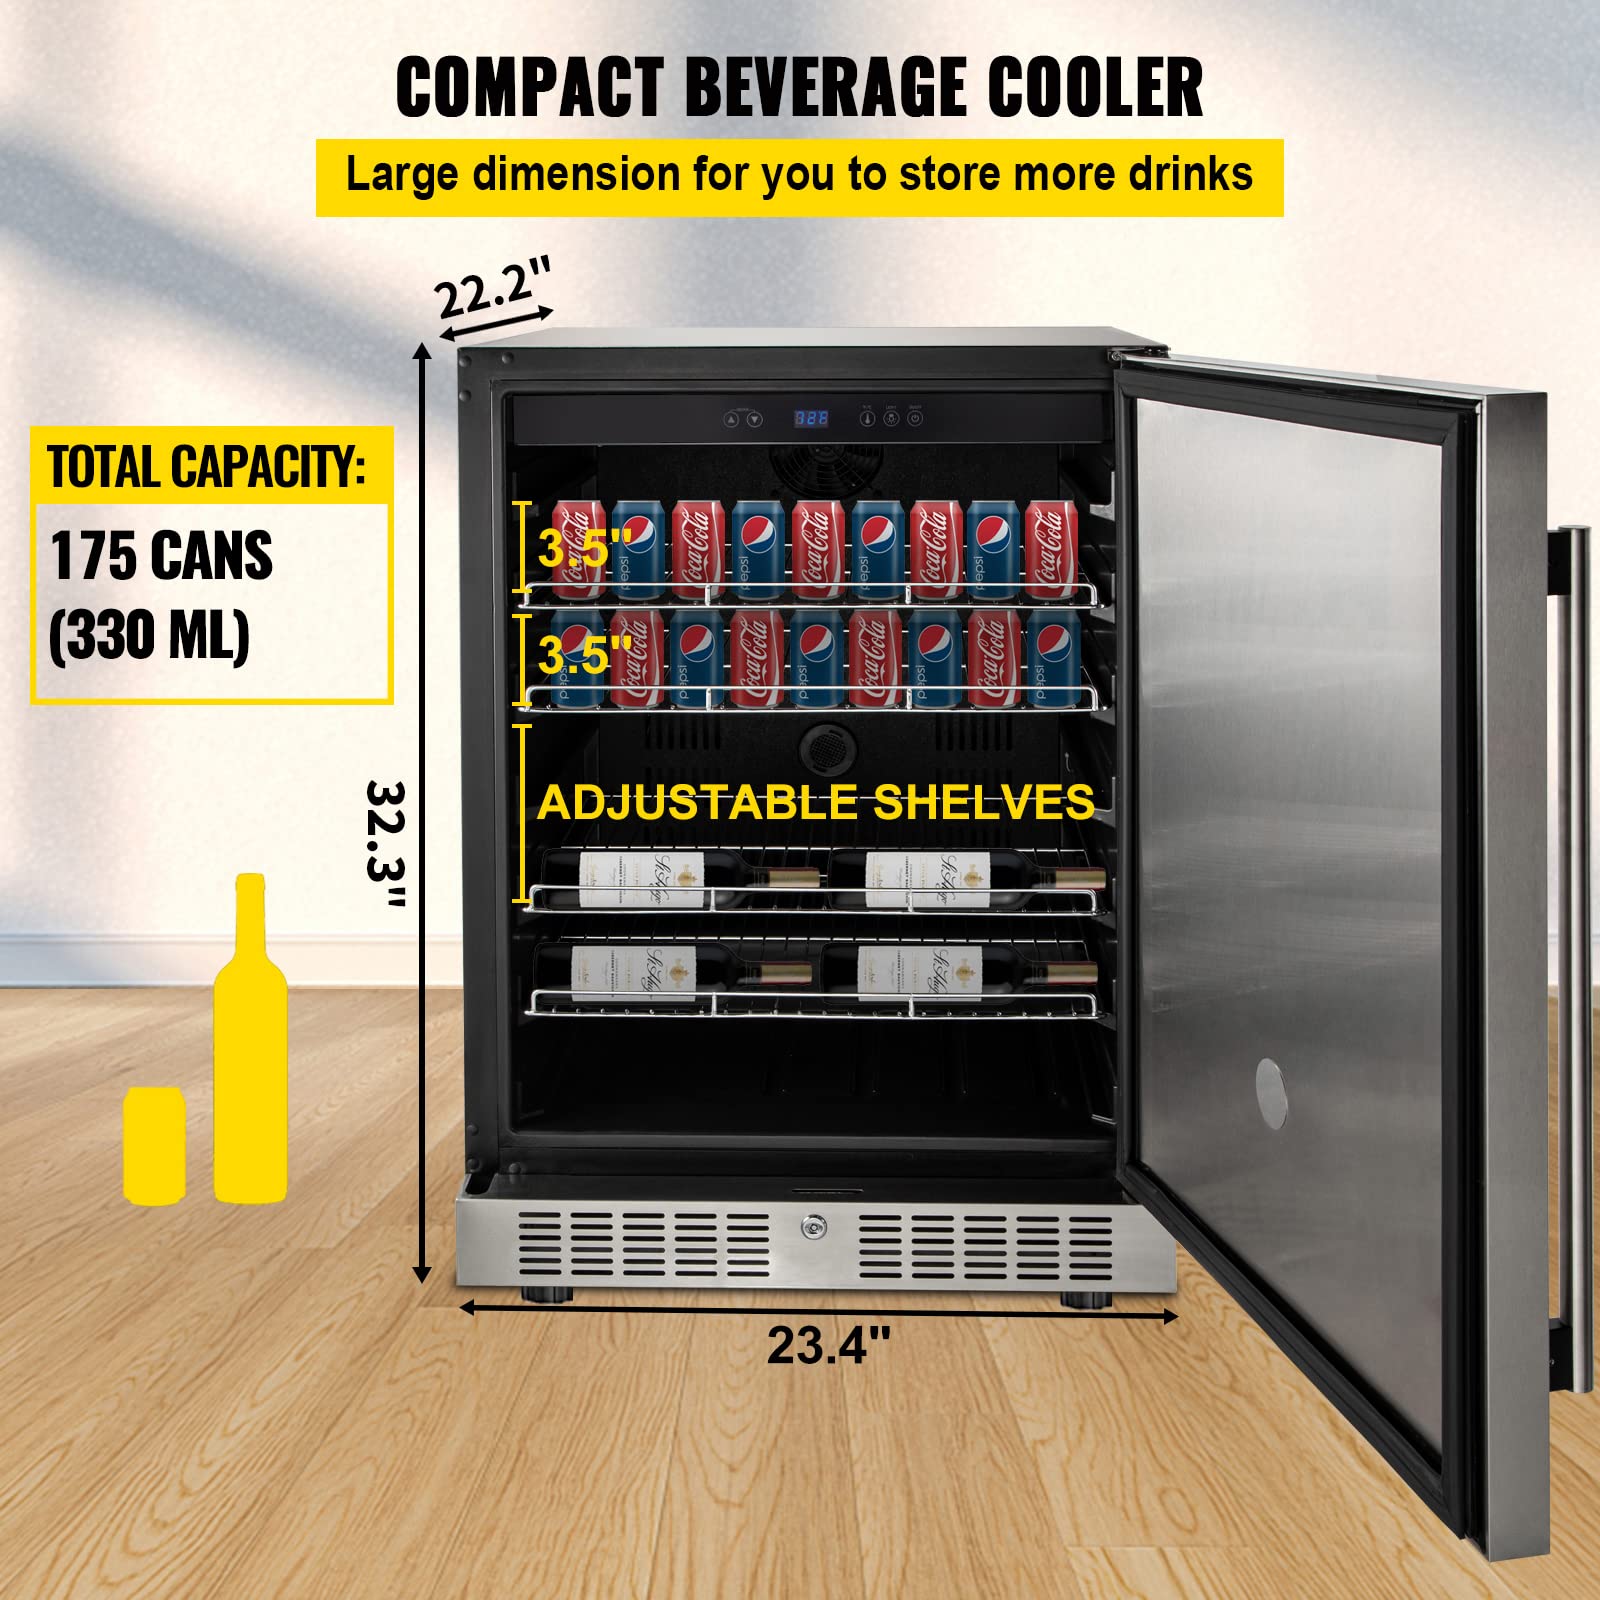 VEVOR Built-in Beverage Cooler, 5.3 cu.ft. Stainless Steel Beverage Refrigerator w/Embraco Compressor (Silver)